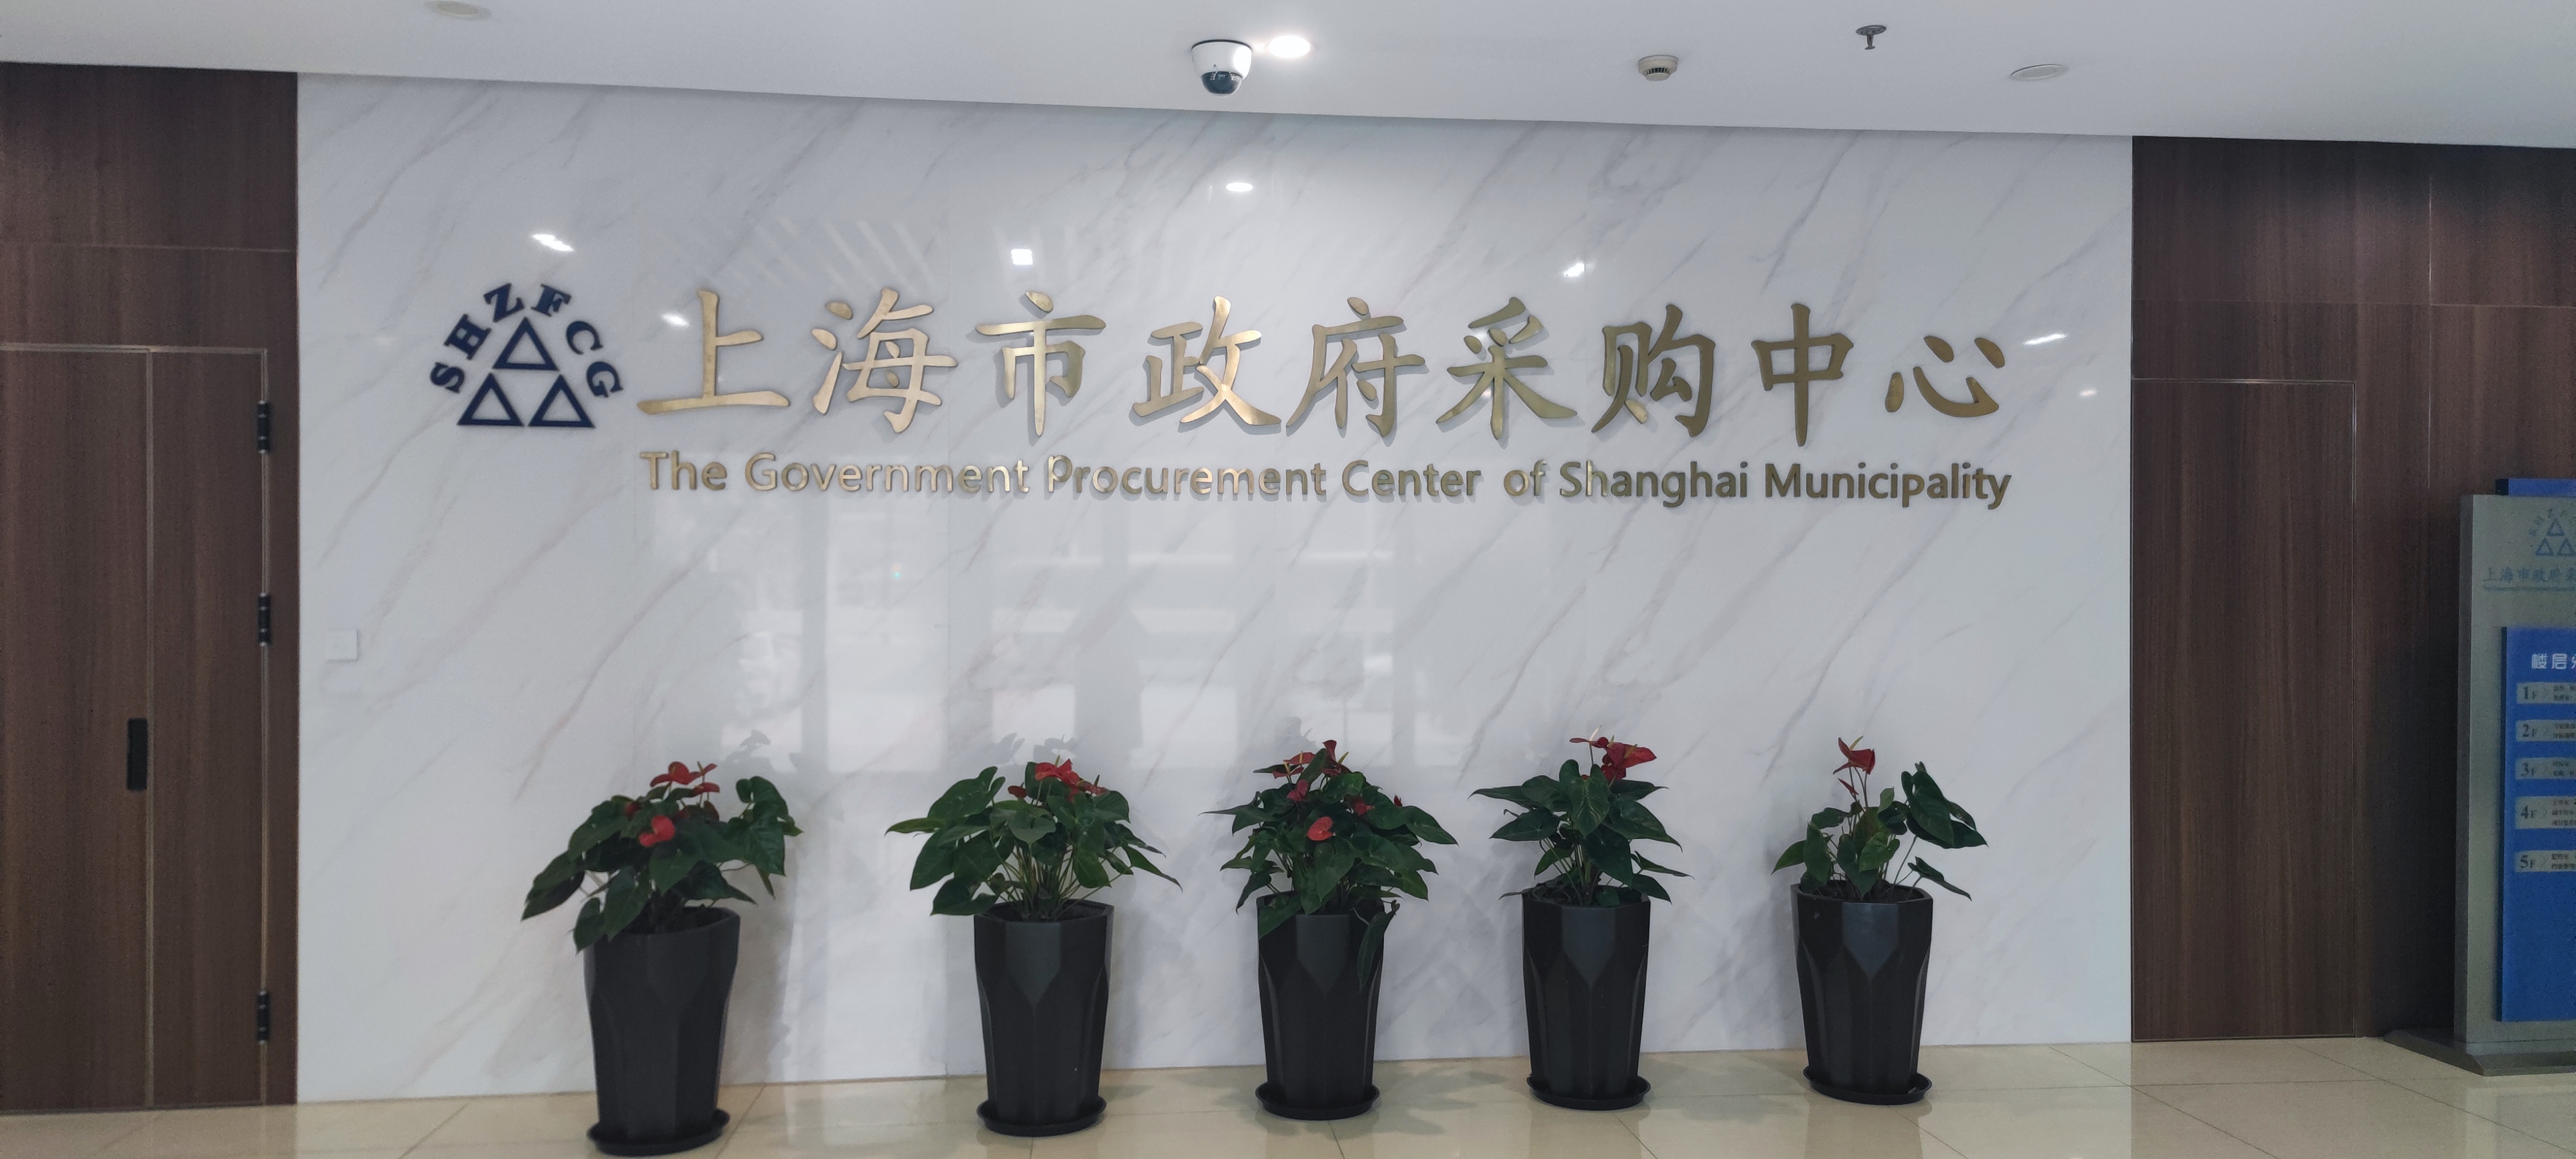 上海市政府采购中心